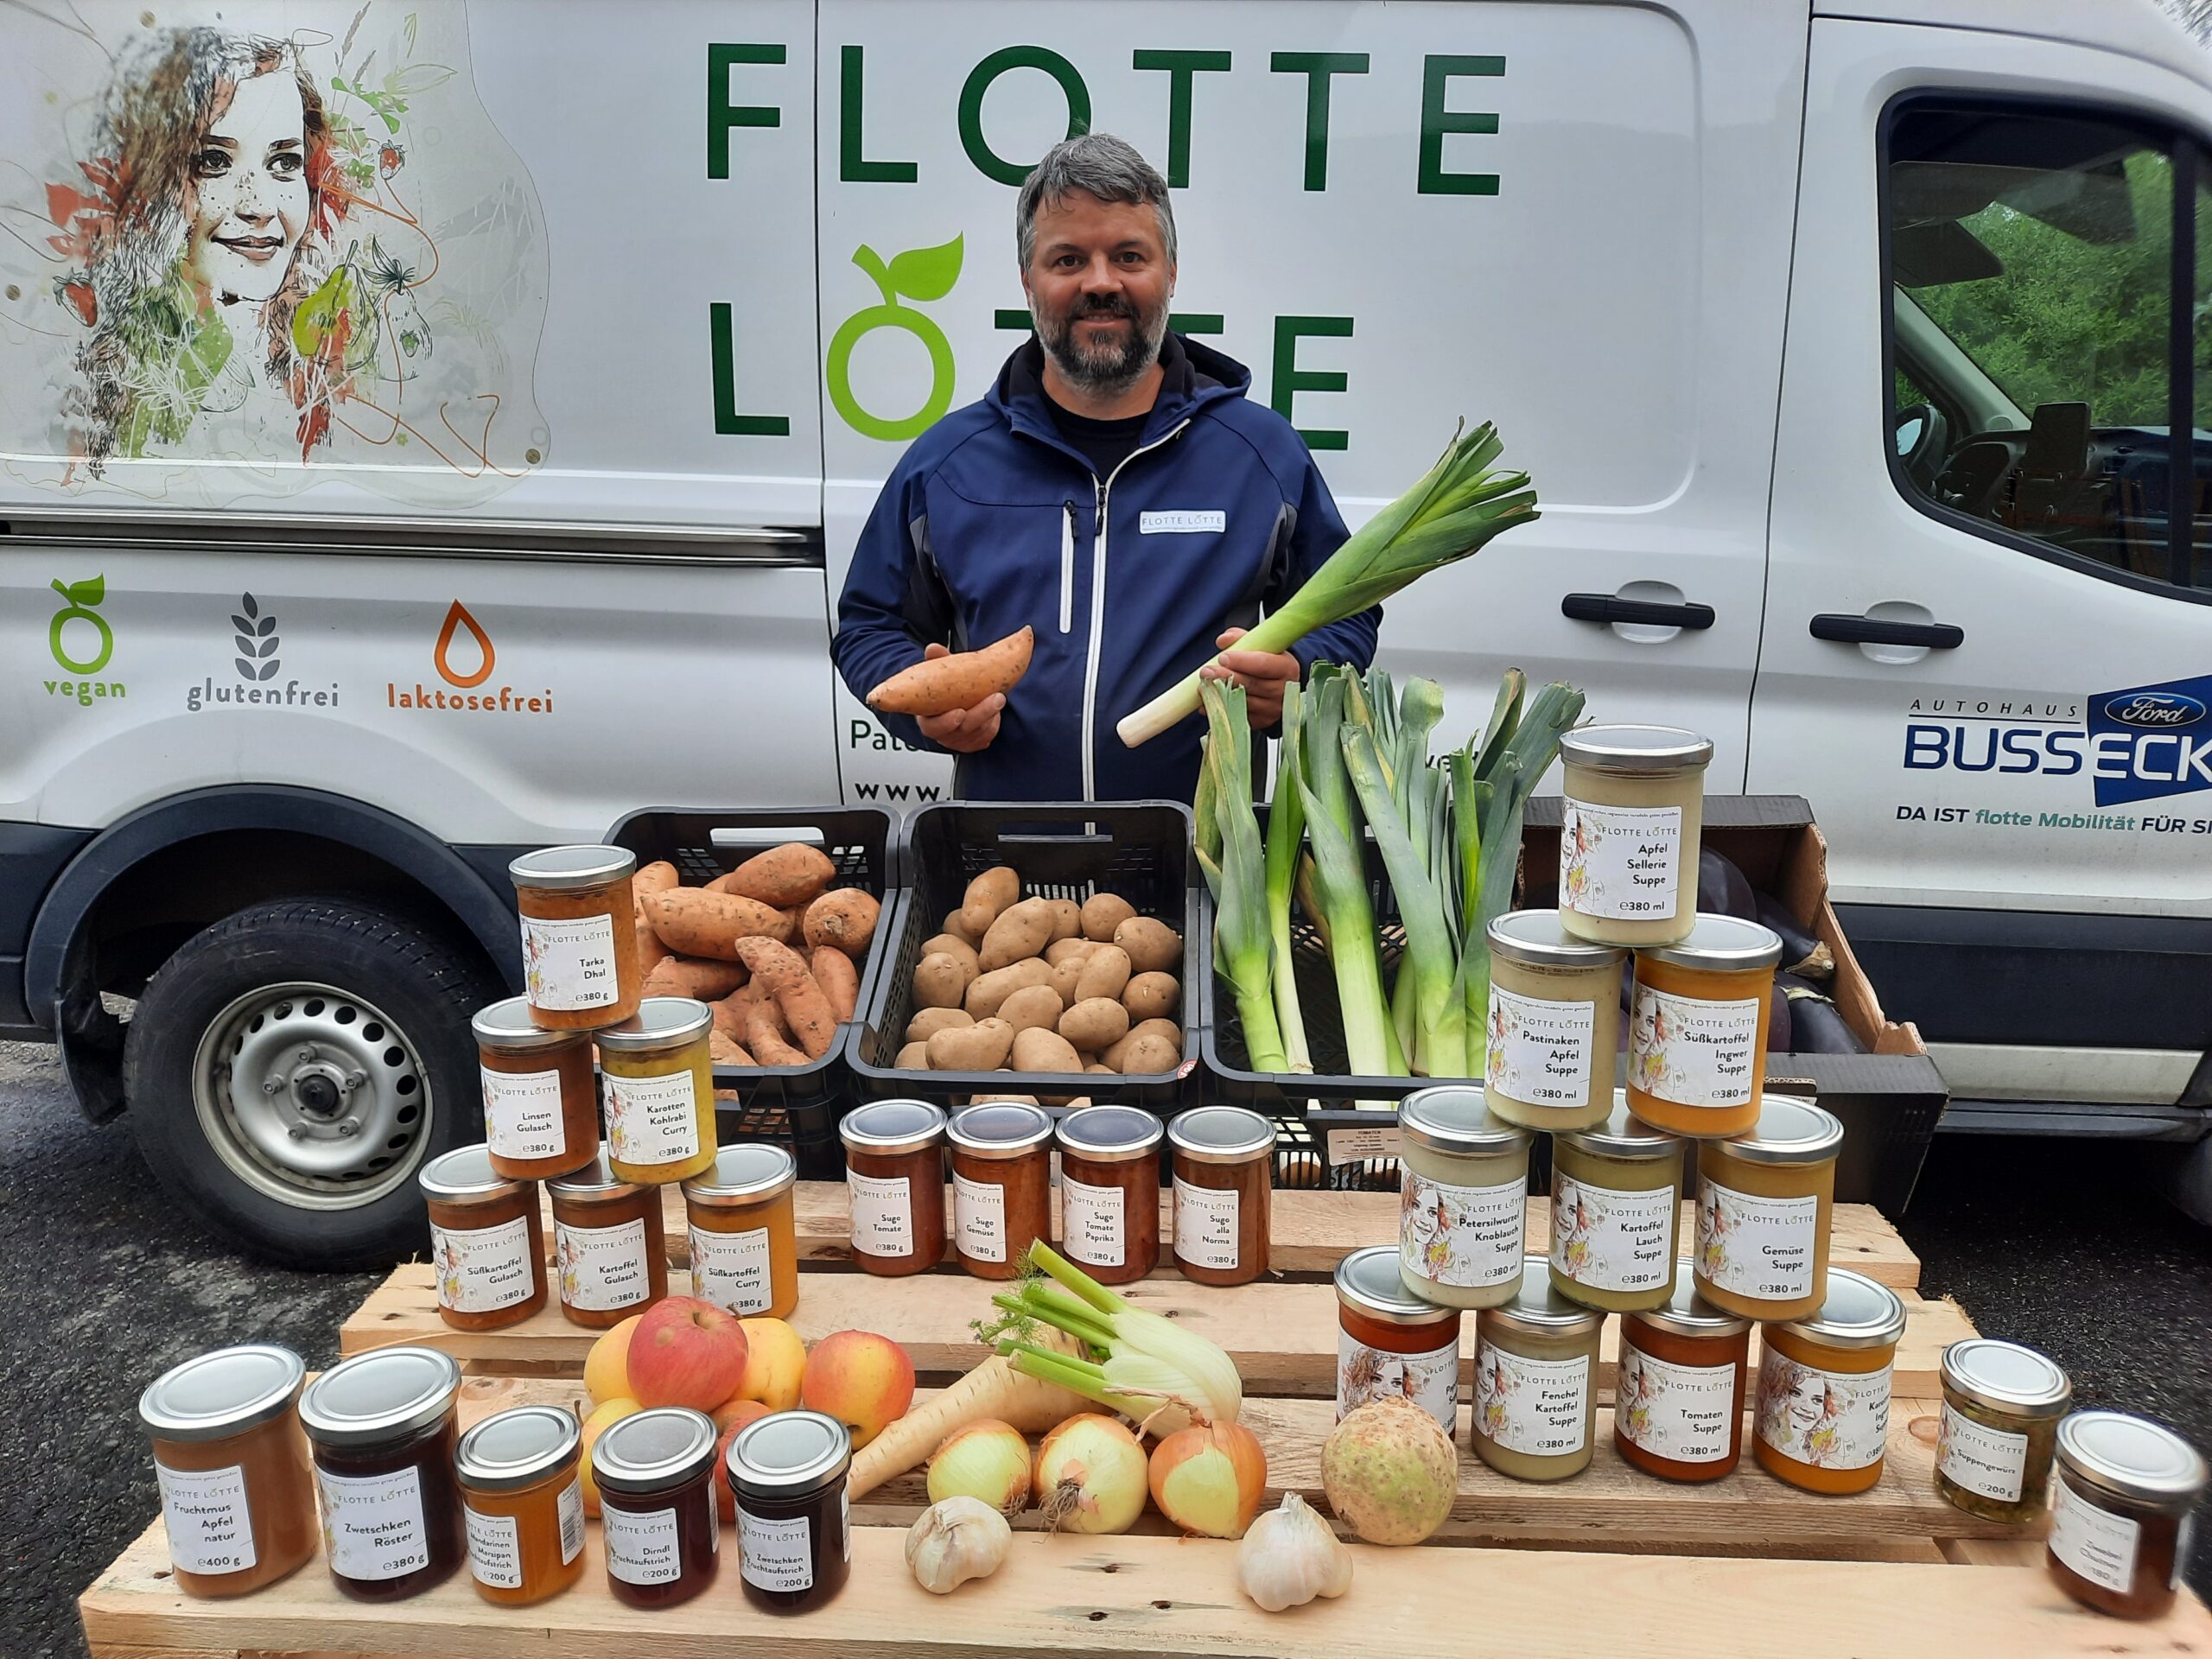 Daniel Ruttinger GF von Flotte Lotte mit Gemüse und fertigen Produkten